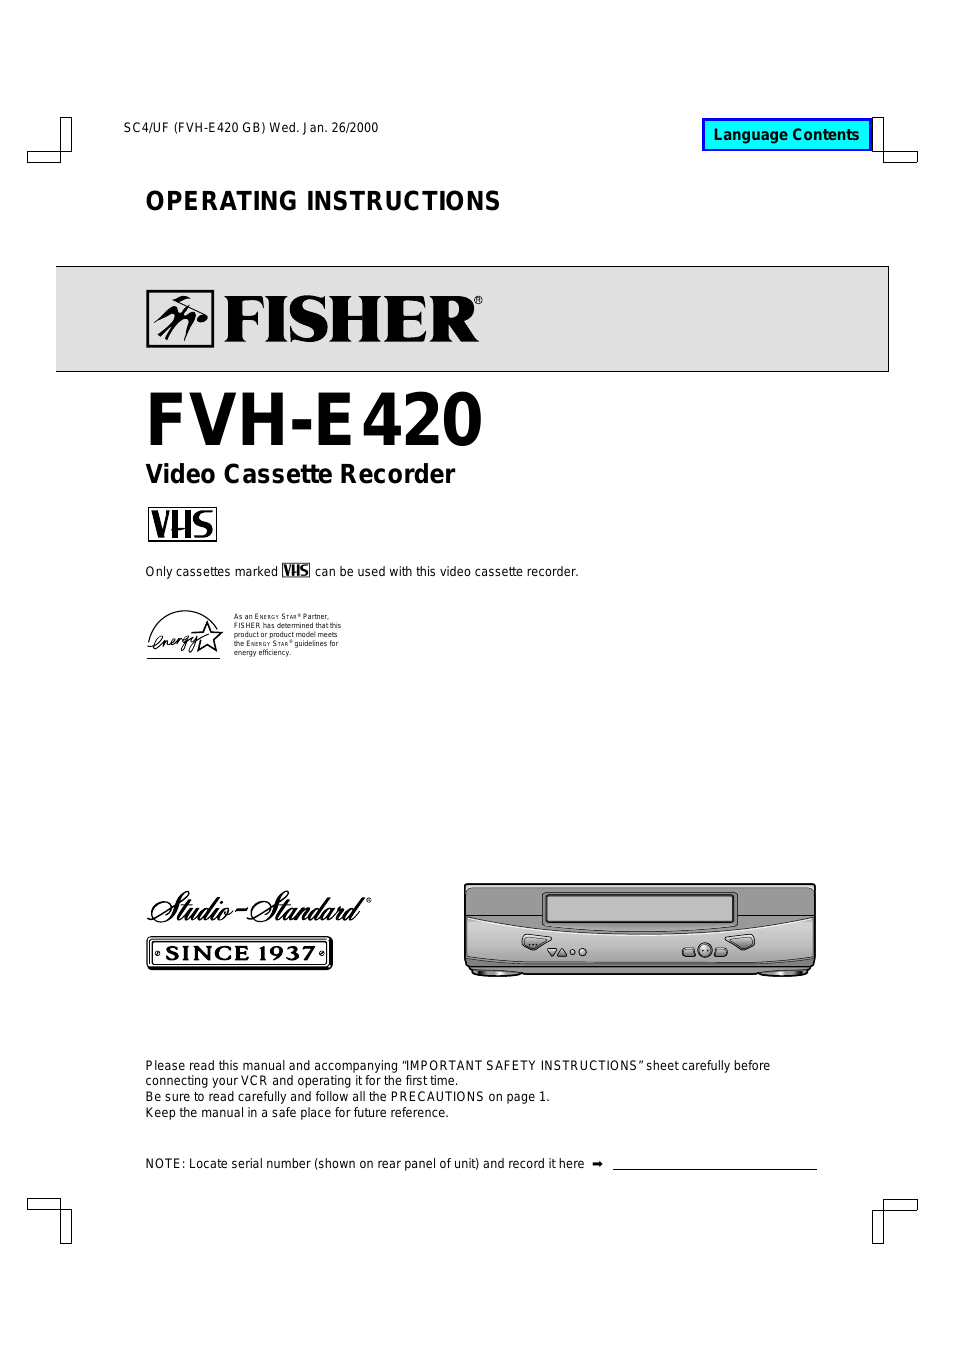 FVH-E420